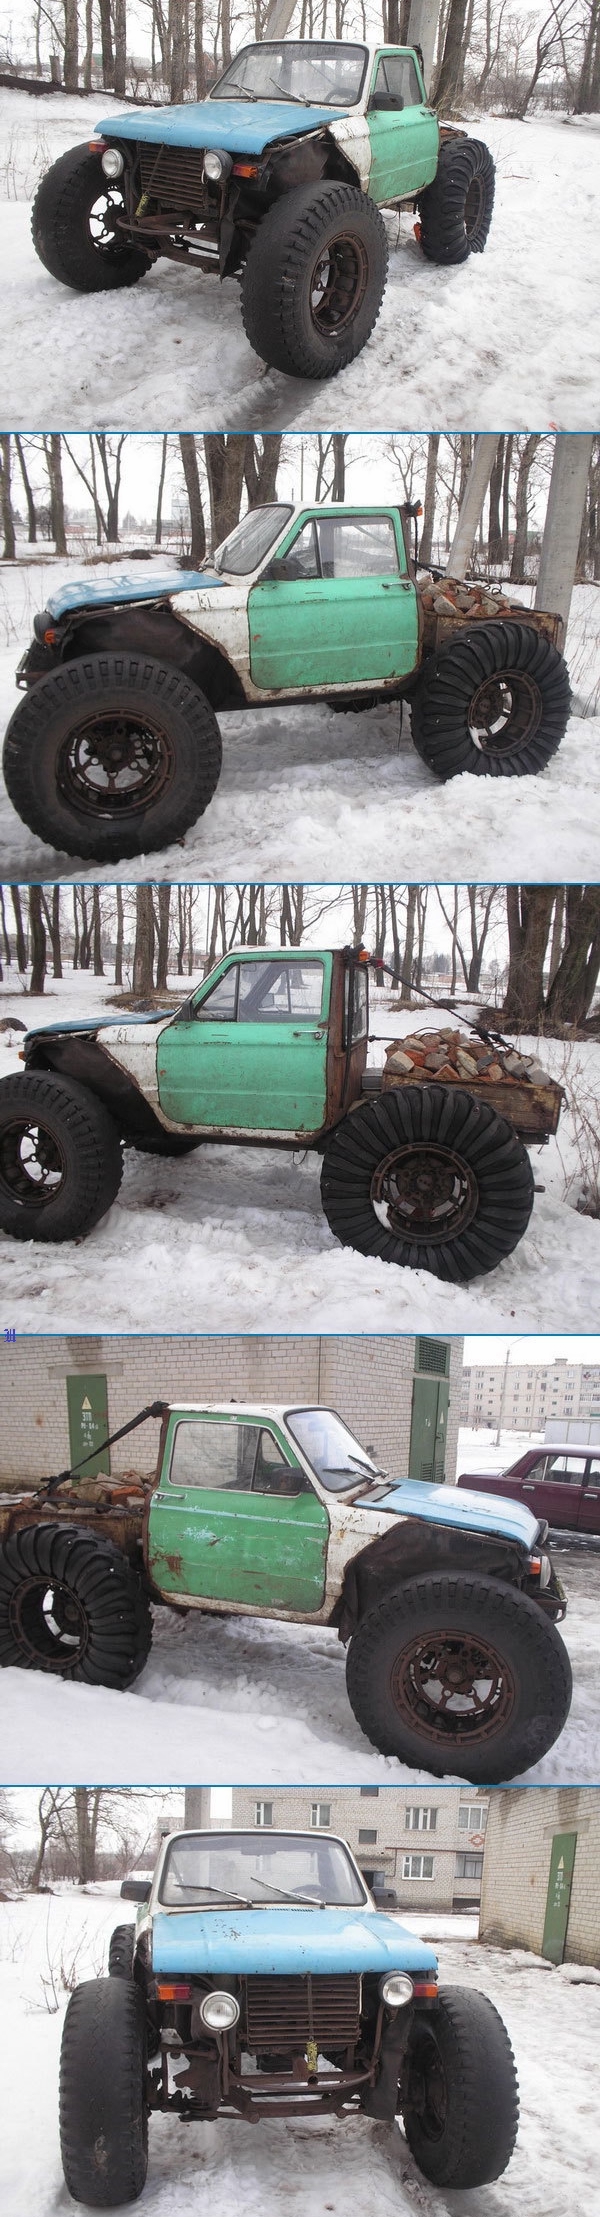 Russian redneck snow quad